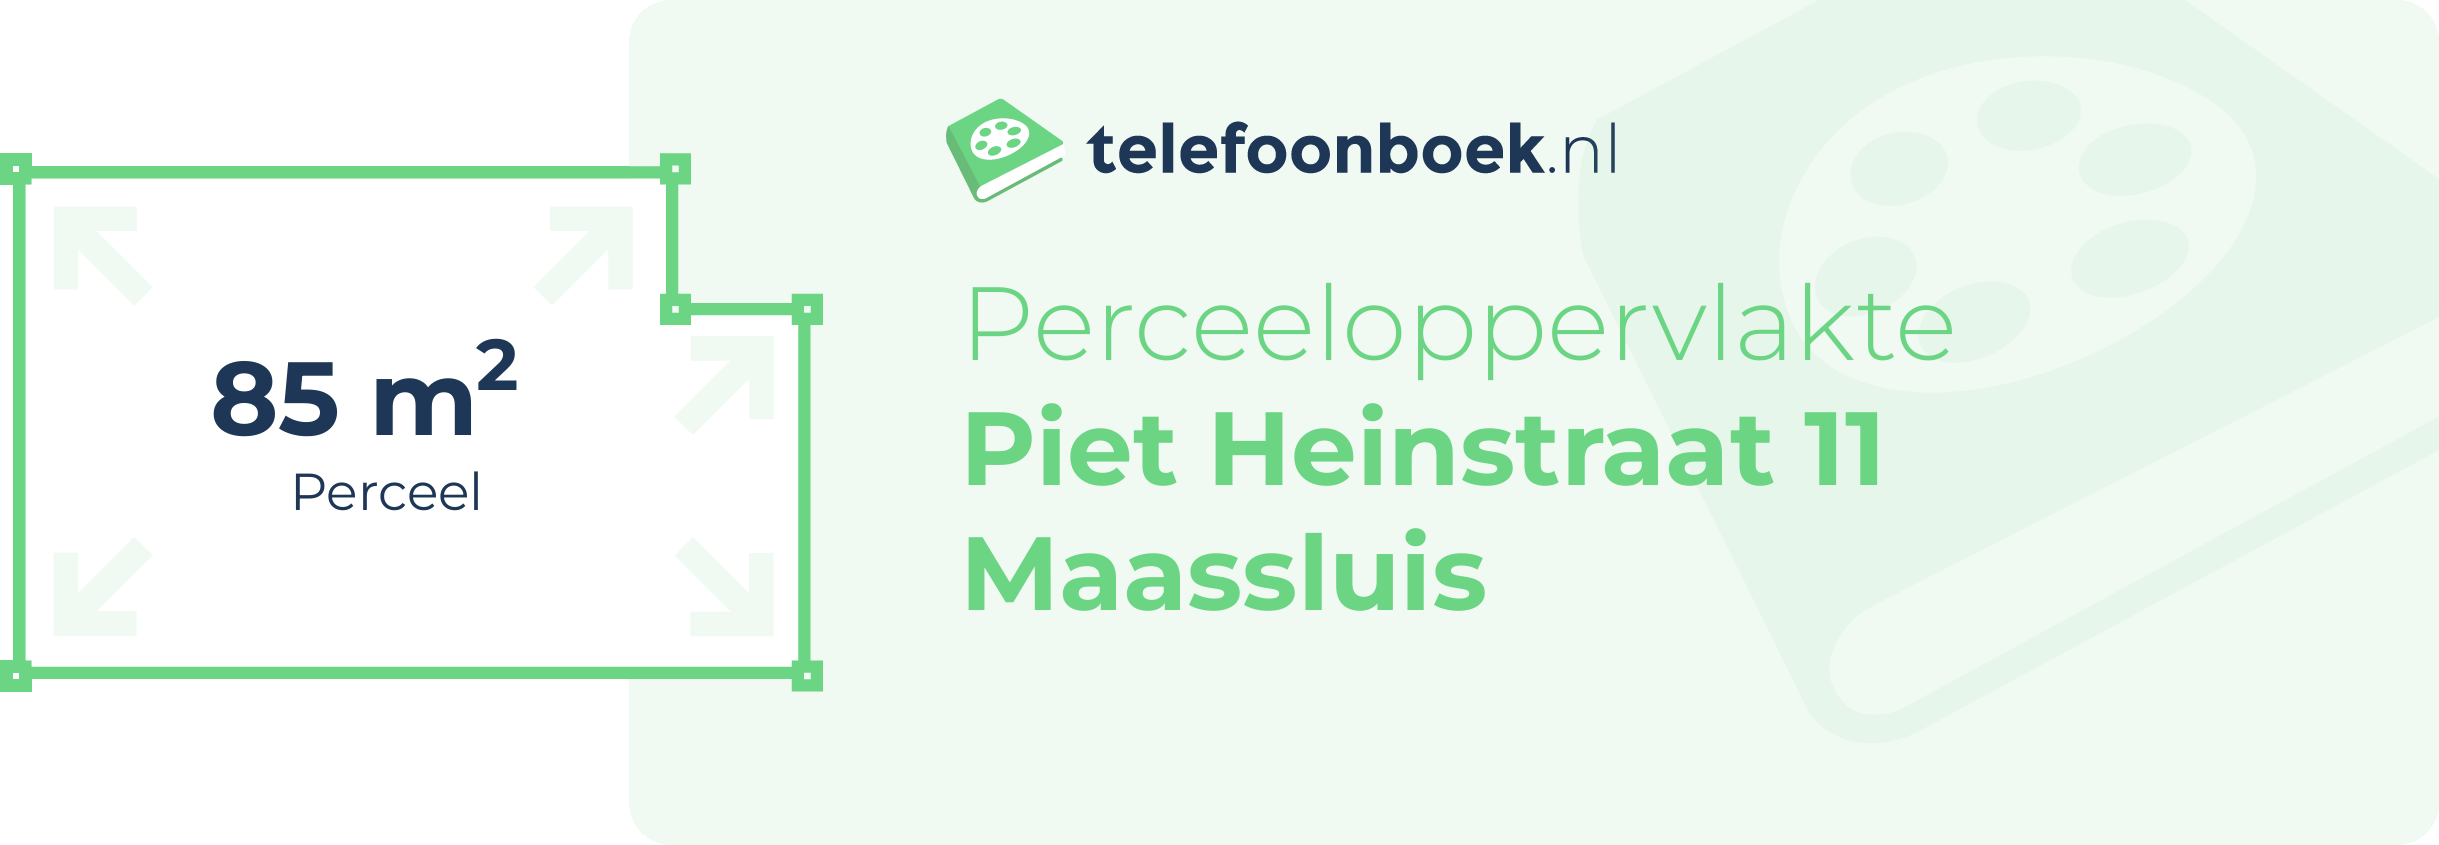 Perceeloppervlakte Piet Heinstraat 11 Maassluis